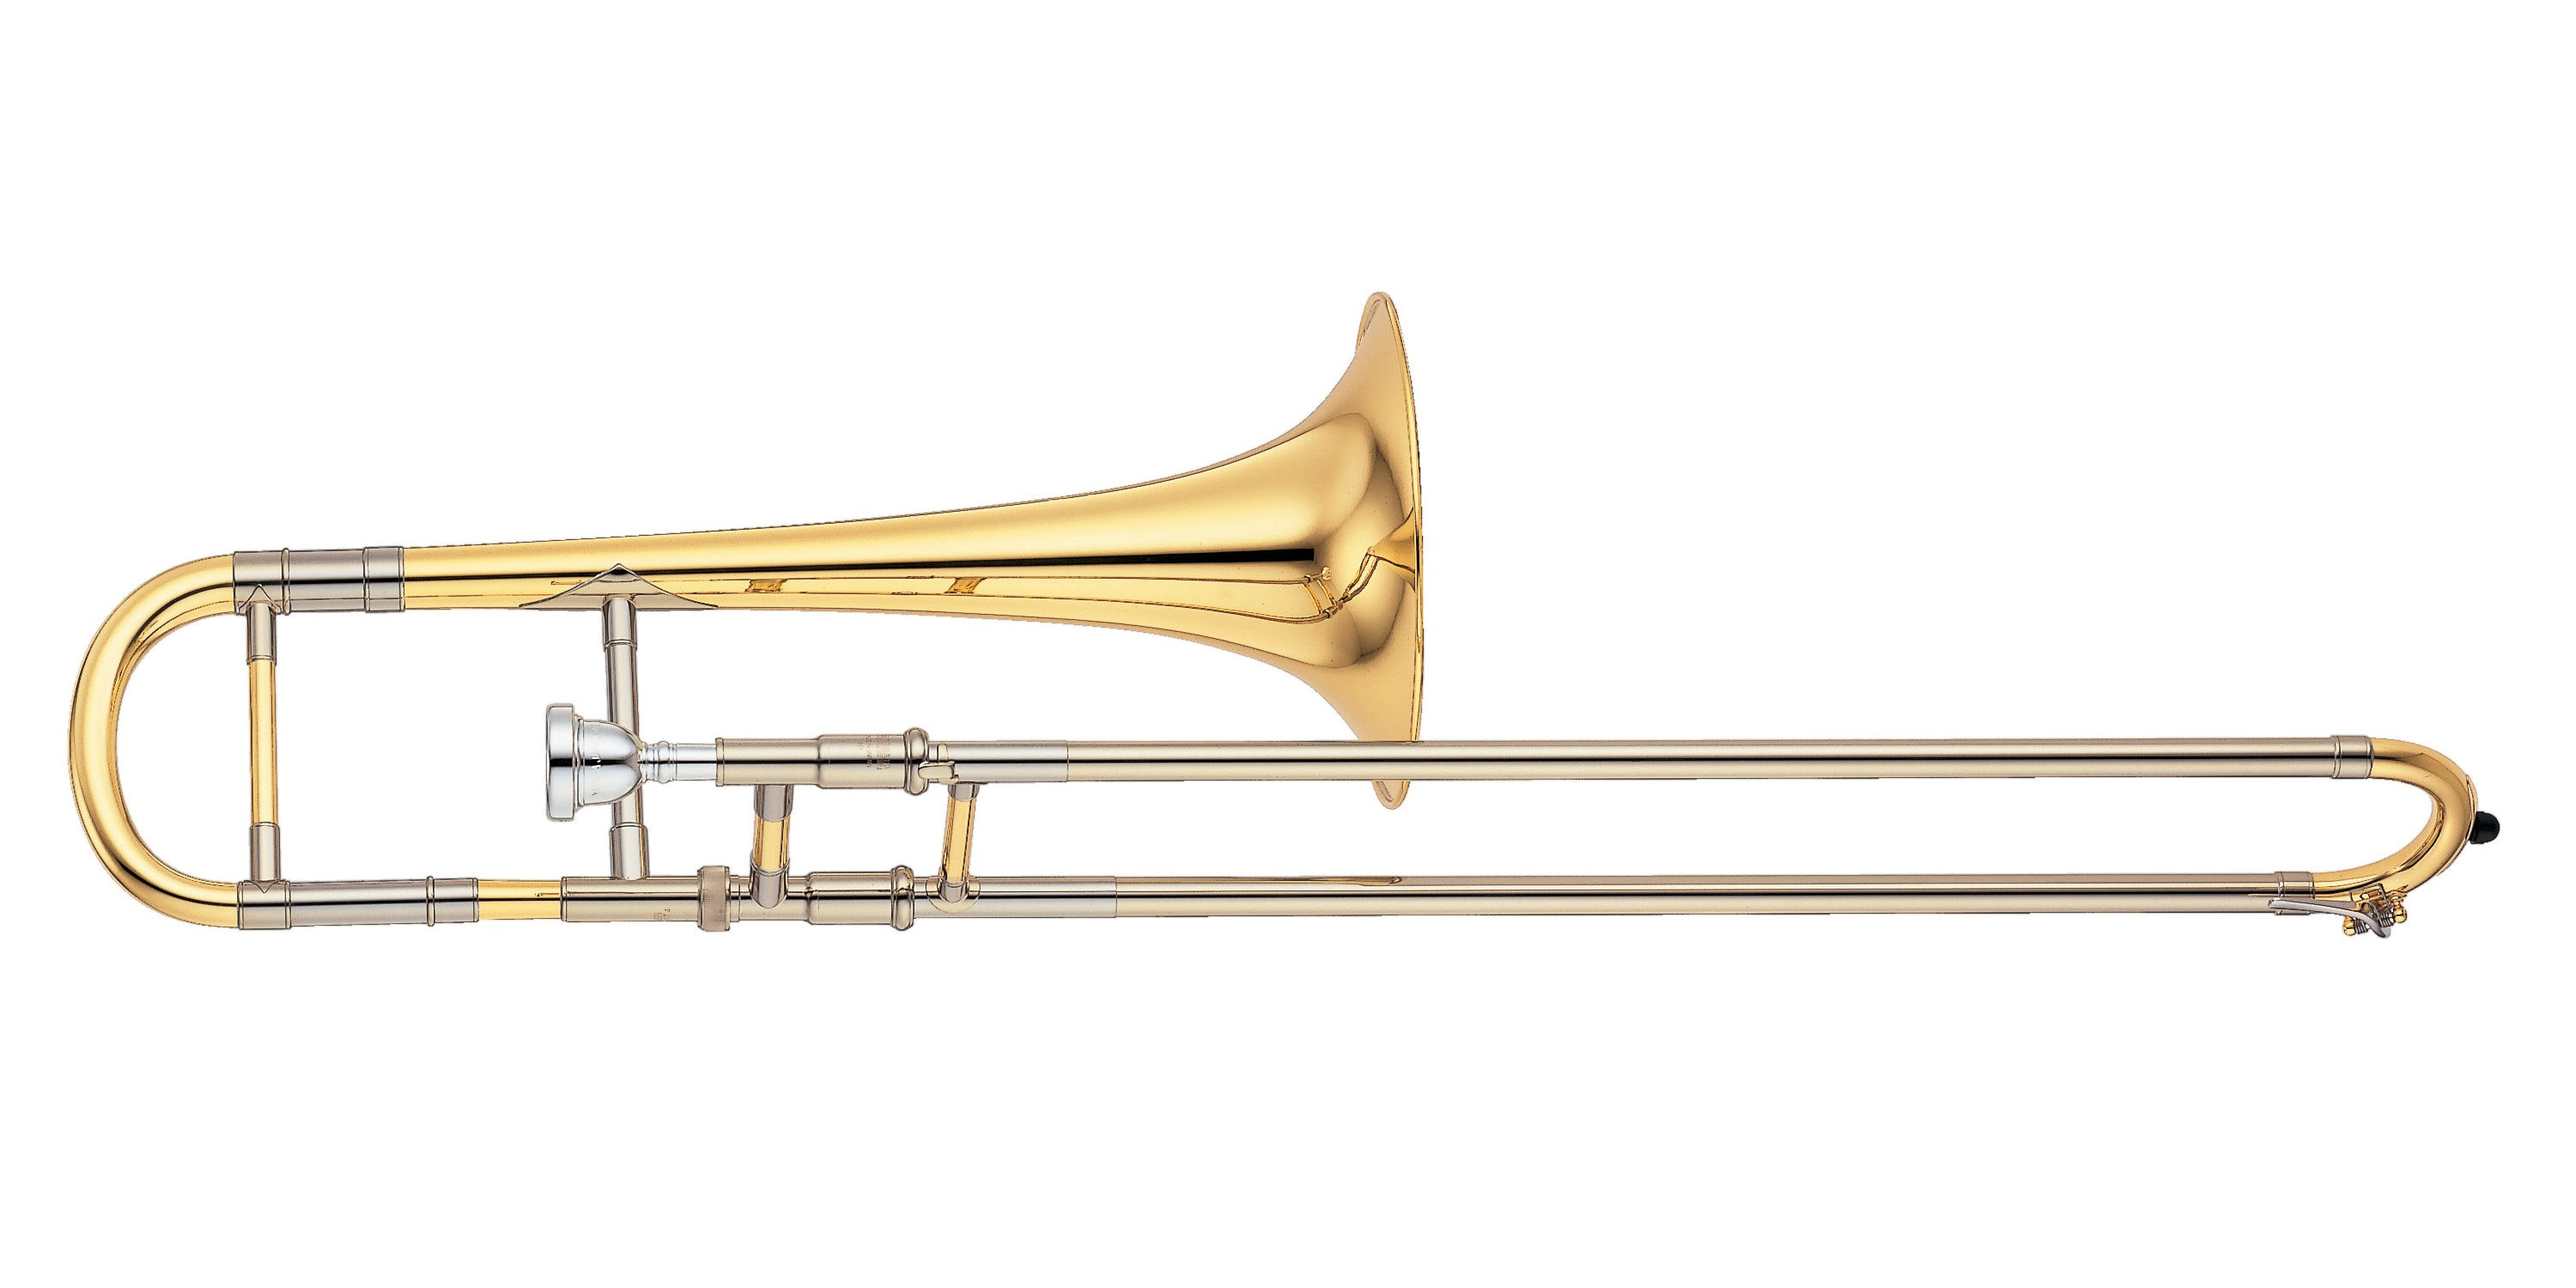 Alto trombone - Wikipedia